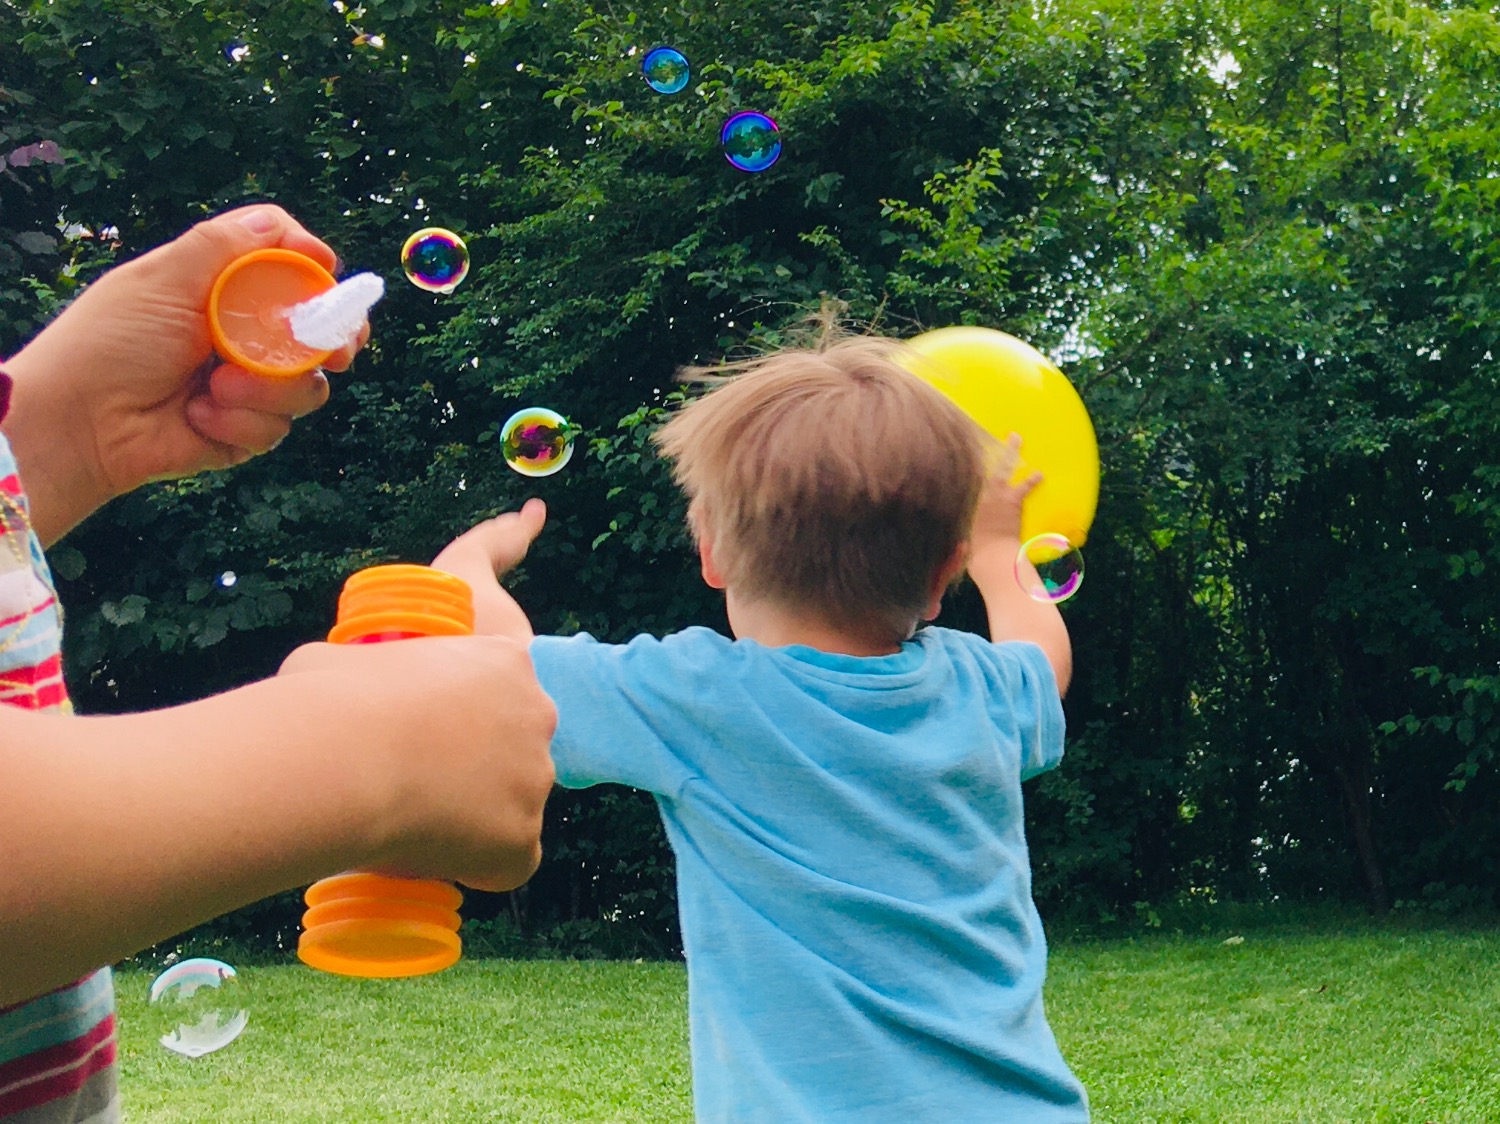 Luftballon-Spiele (5 Ideen)  Schritt-für-Schritt Anleitung für Kinder